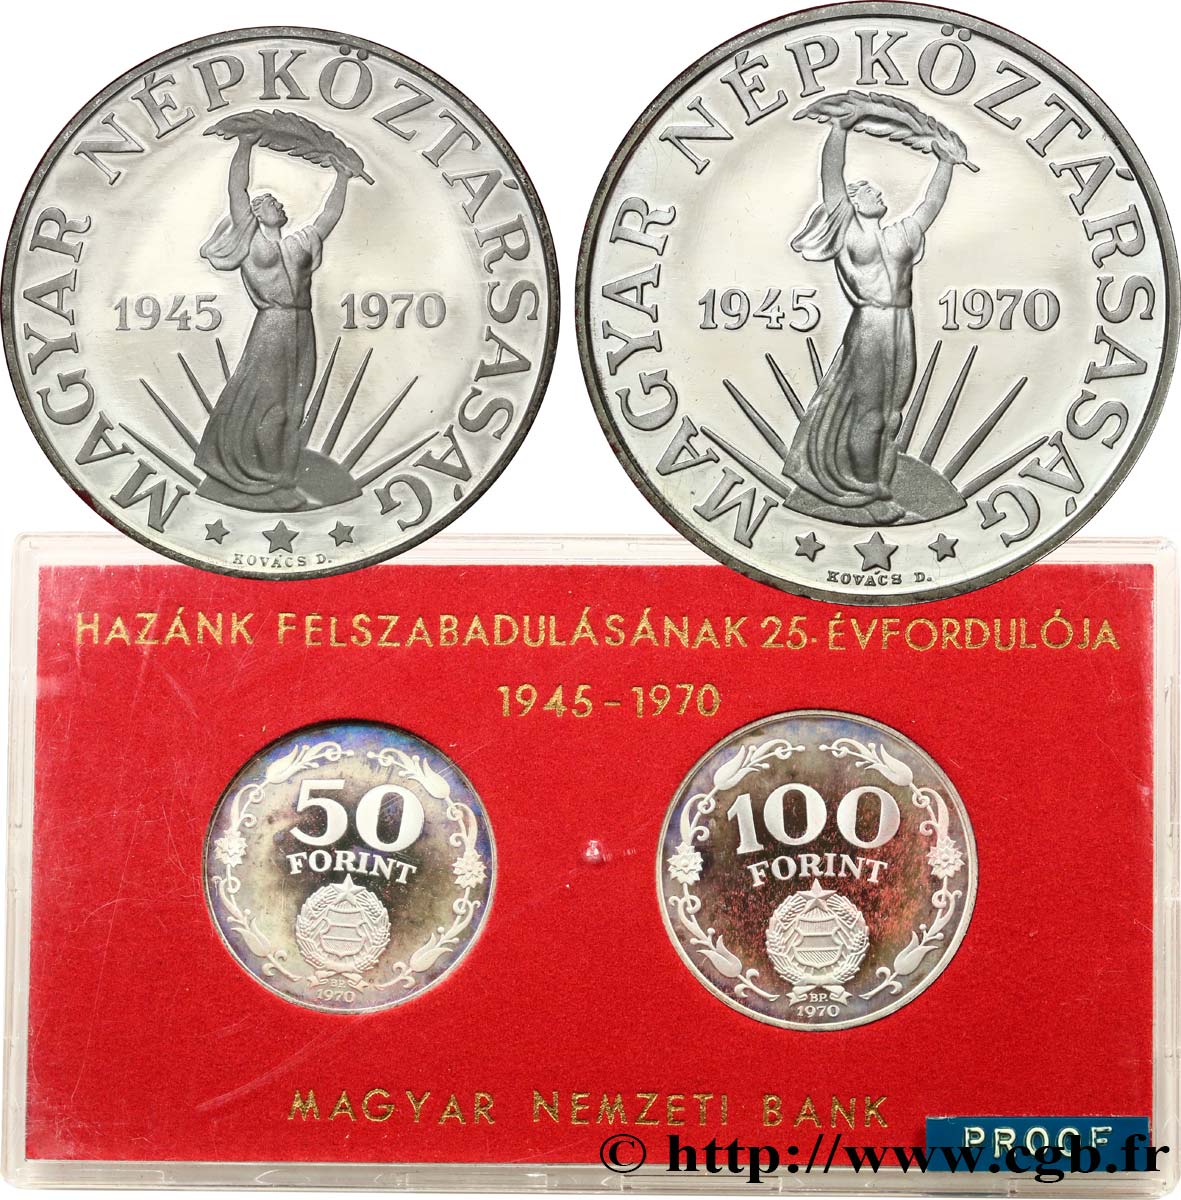 HUNGARY Série Proof - 2 monnaies - Forint 25e anniversaire de la Libération 1945-1970 1970 Budapest Proof set 